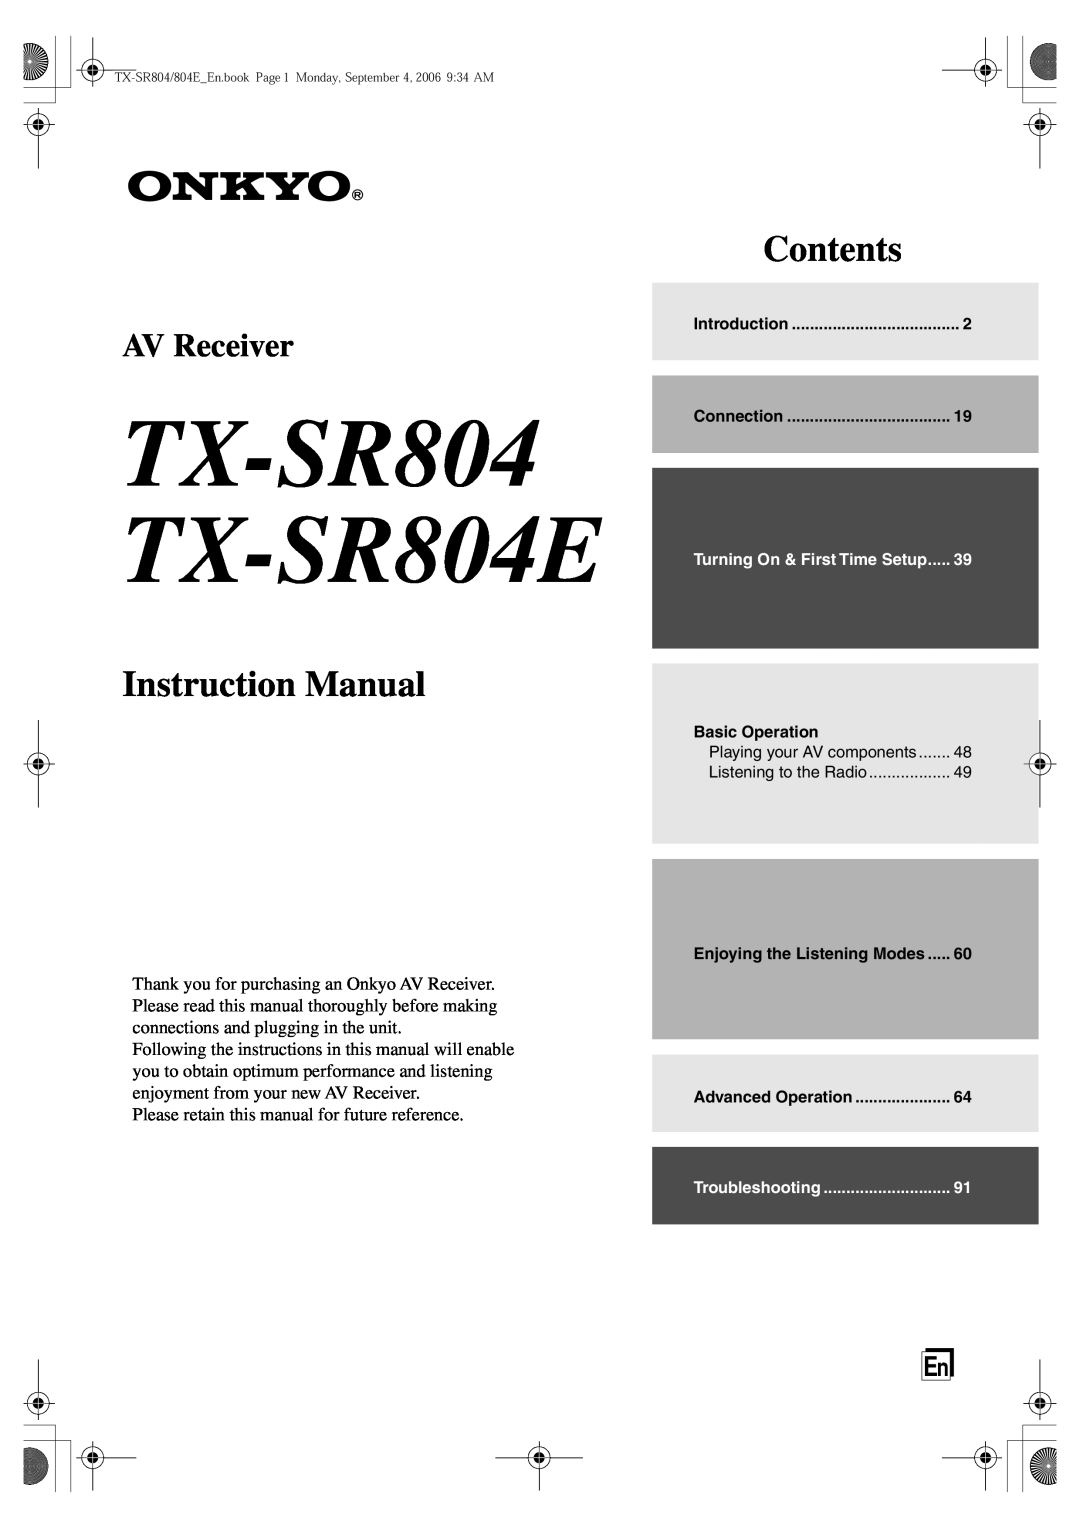 Onkyo instruction manual TX-SR804 TX-SR804E, Instruction Manual, Contents, AV Receiver 